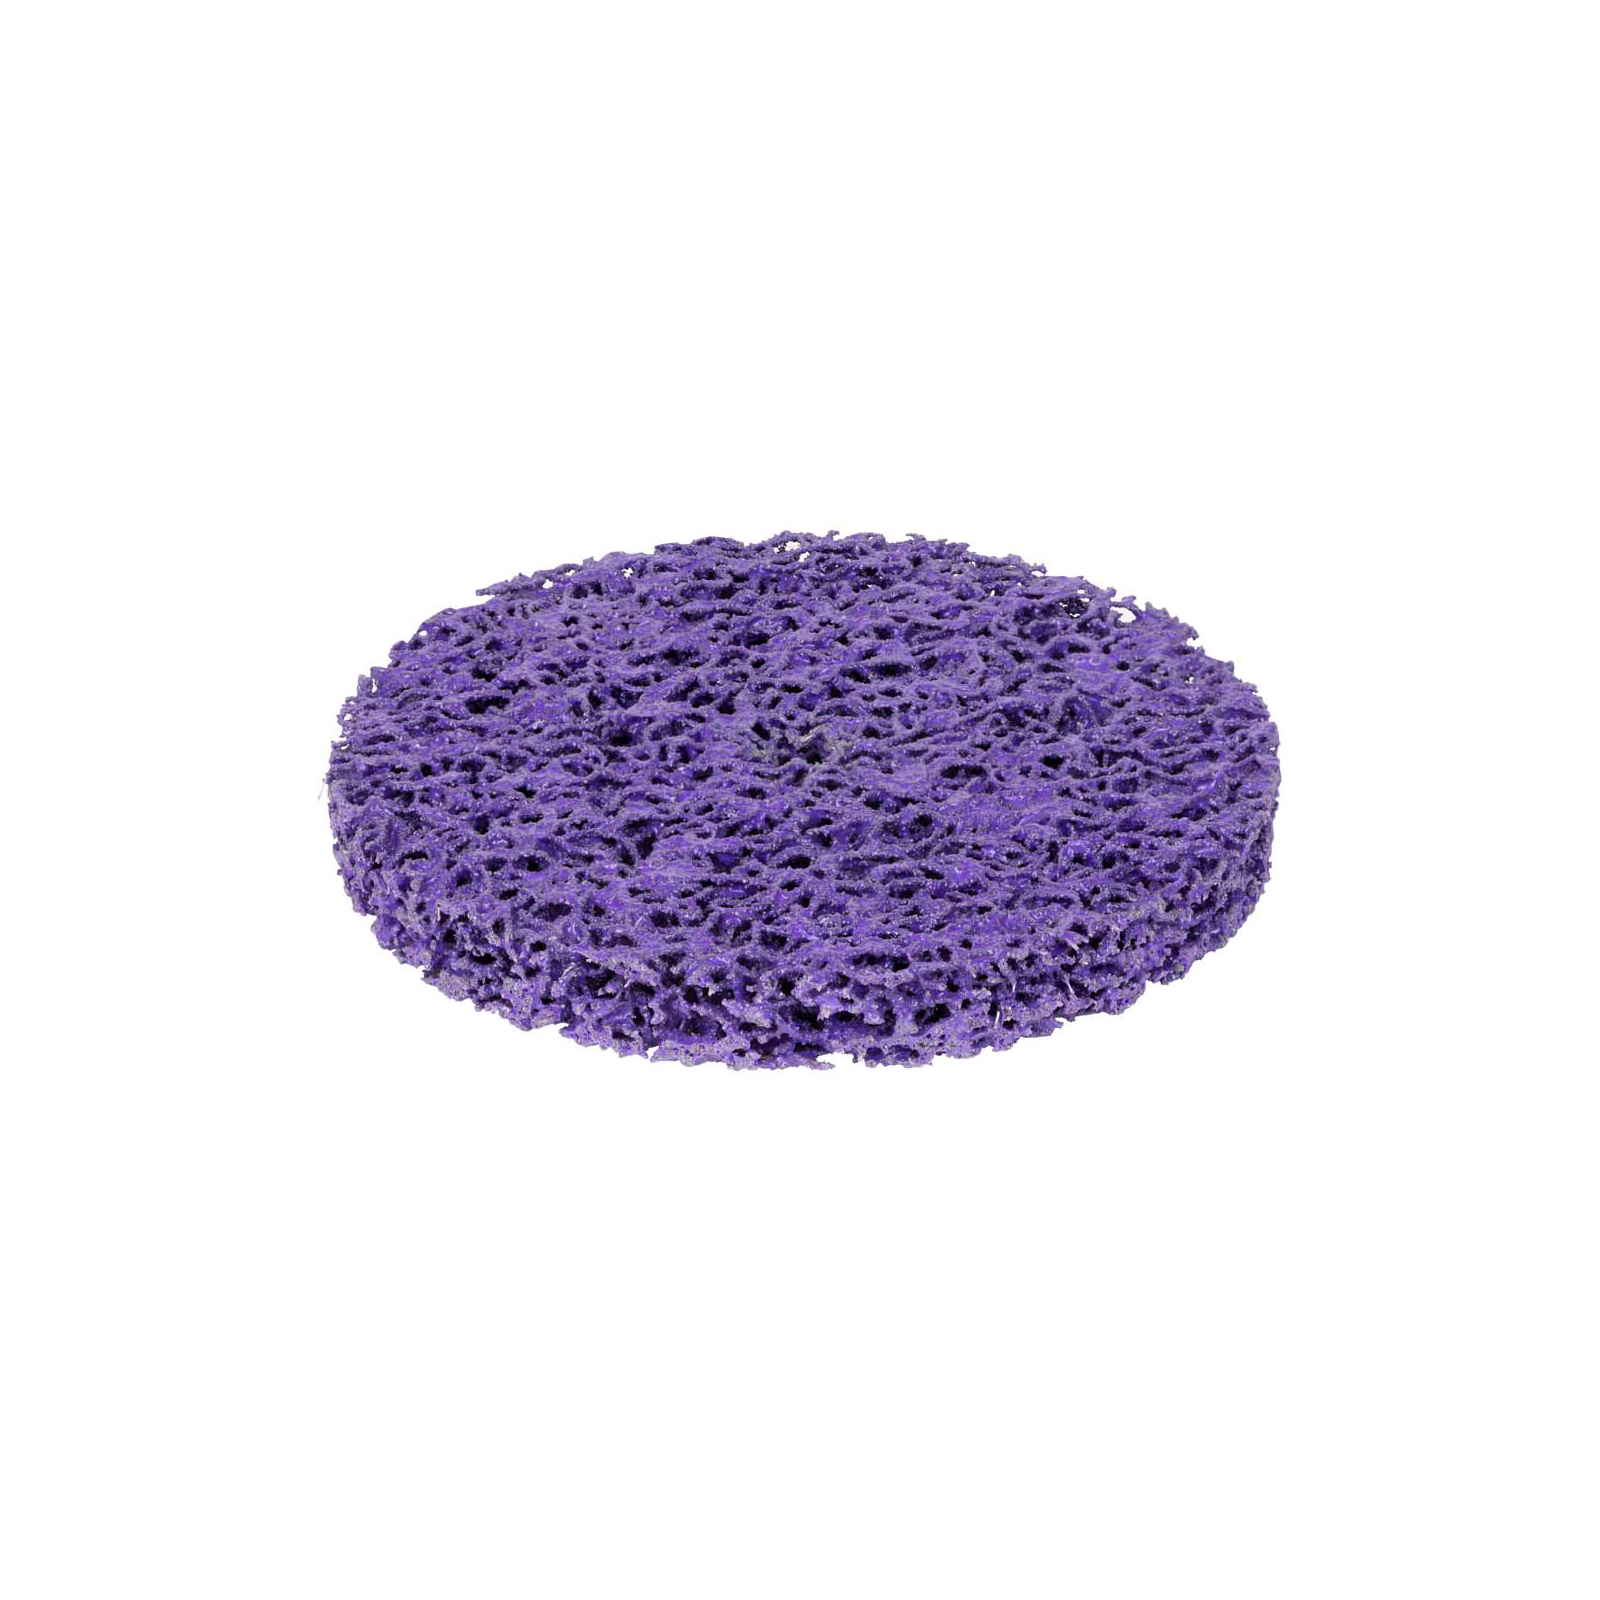 Круг зачистной Sigma из нетканого абразива (коралл) 125мм без держателя фиолетовый жесткий (9175681) изображение 3